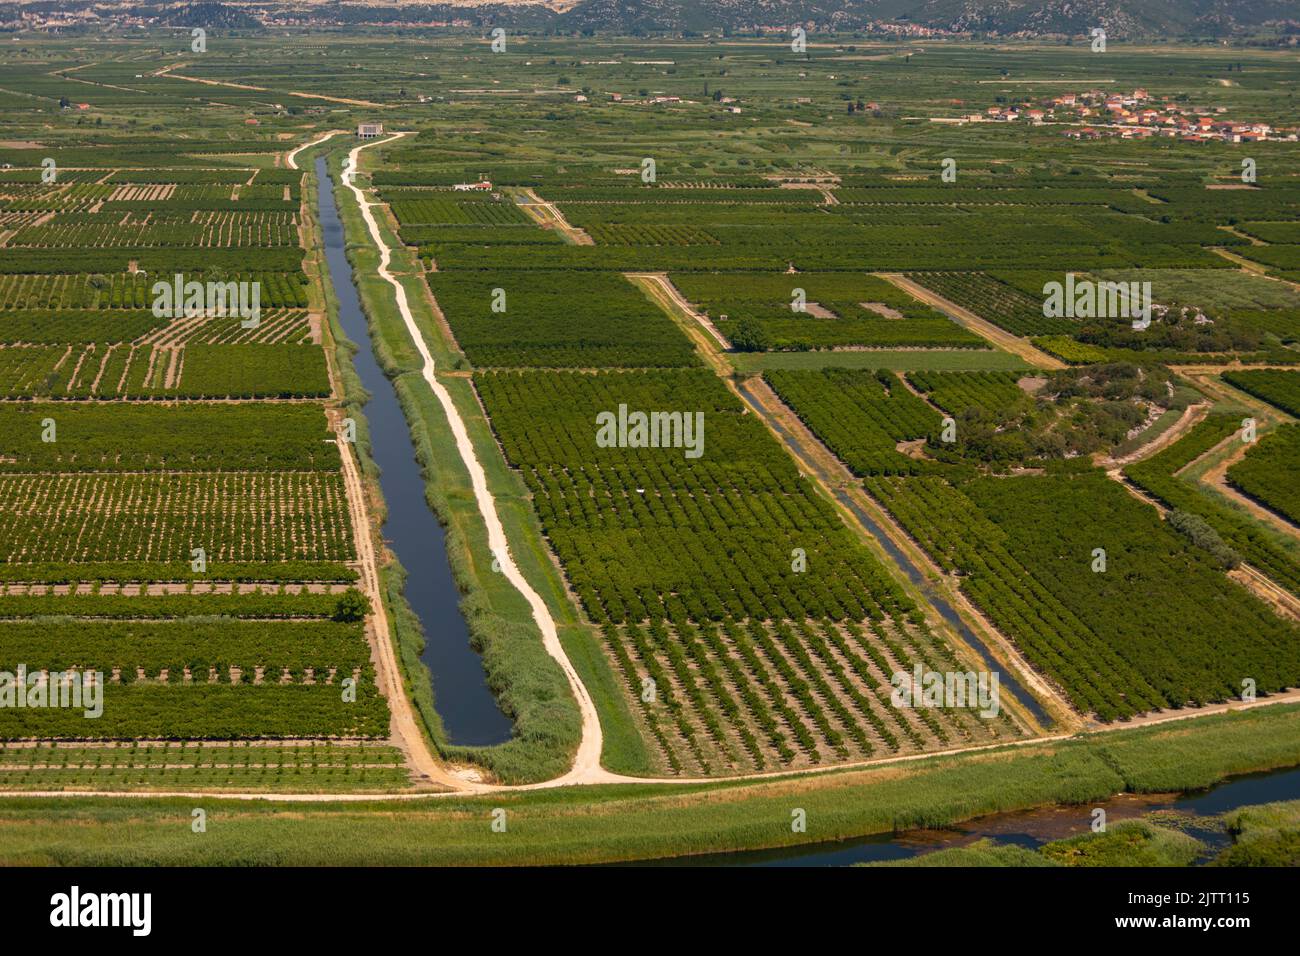 OPUZEN, VALLE DI NERETVA, CROAZIA, EUROPA - Agricoltura e canali di irrigazione nella Valle del fiume Neretva. Foto Stock